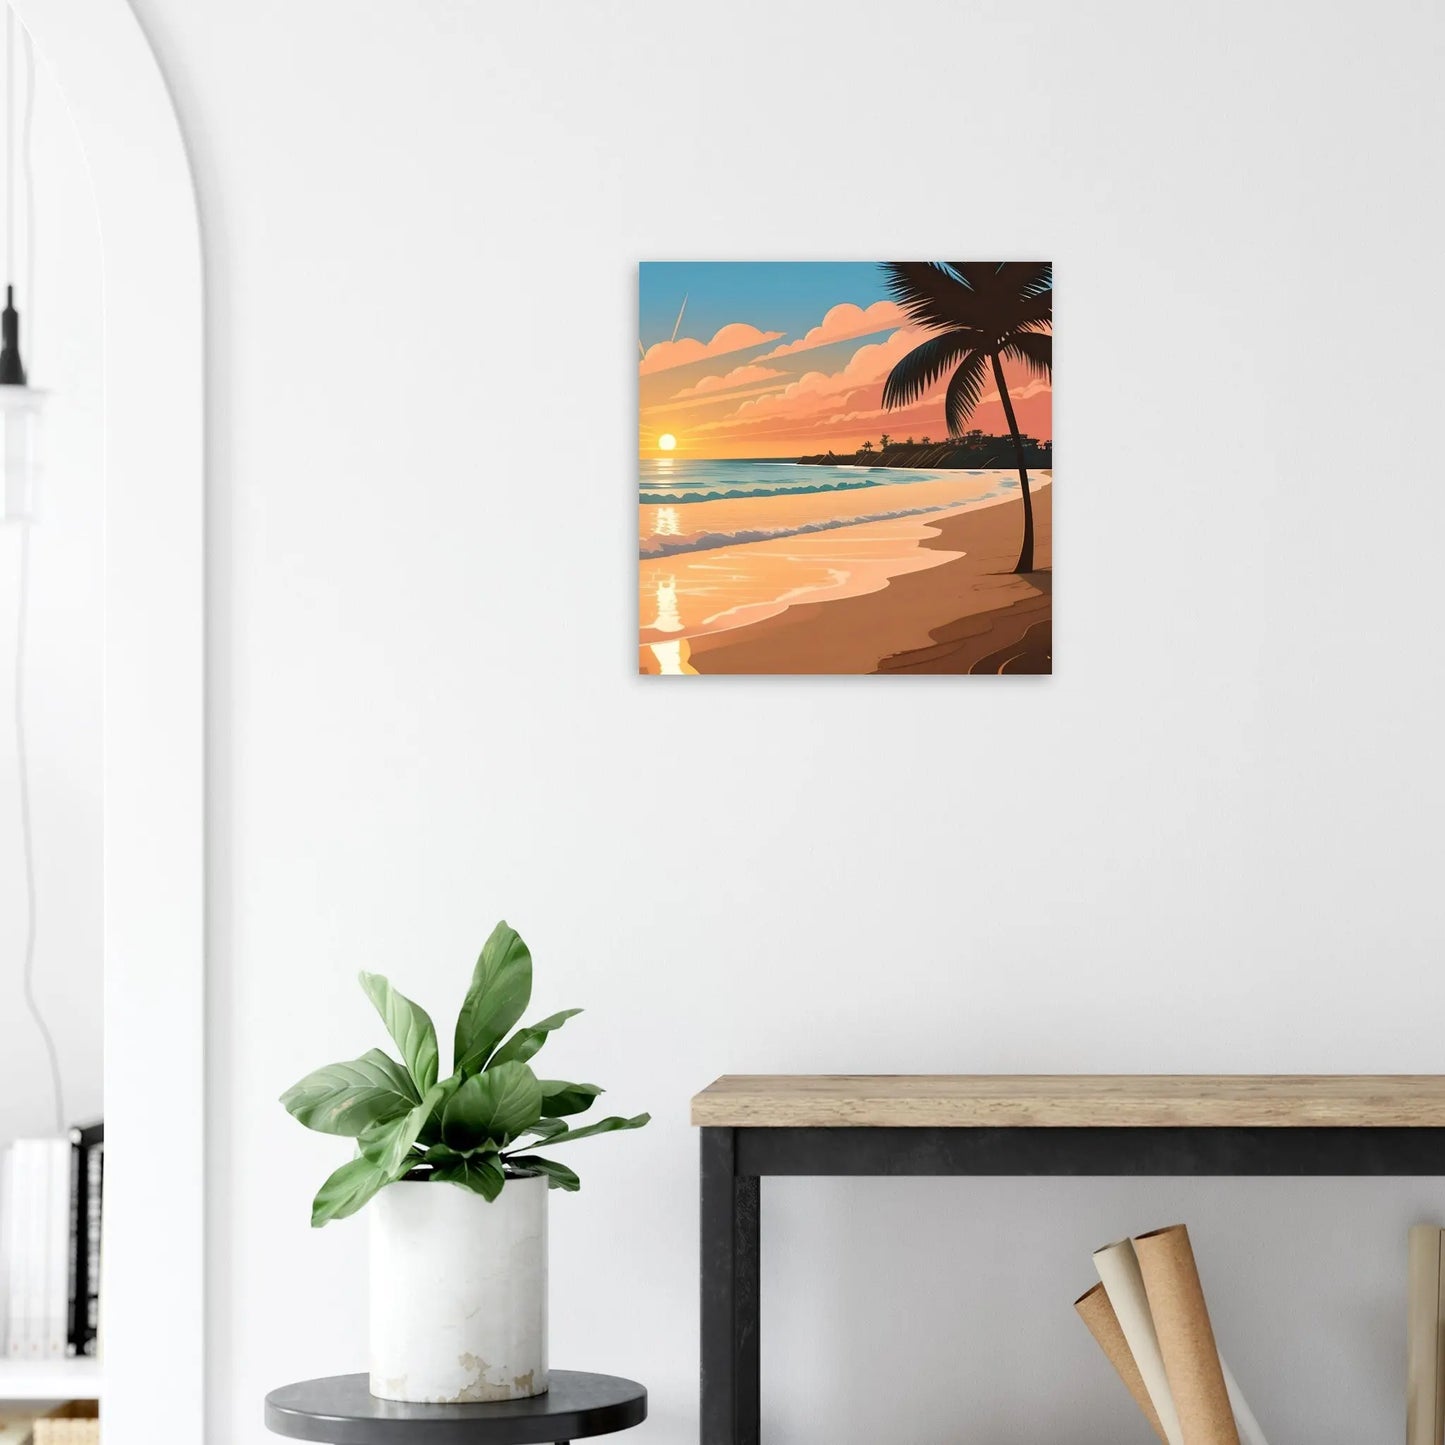 Moderner Forex-Druck - Abendsonne am Meer - Digitaler Stil, KI-Kunst - RolConArt, Landschaften, 50x50-cm-20x20-Weiß